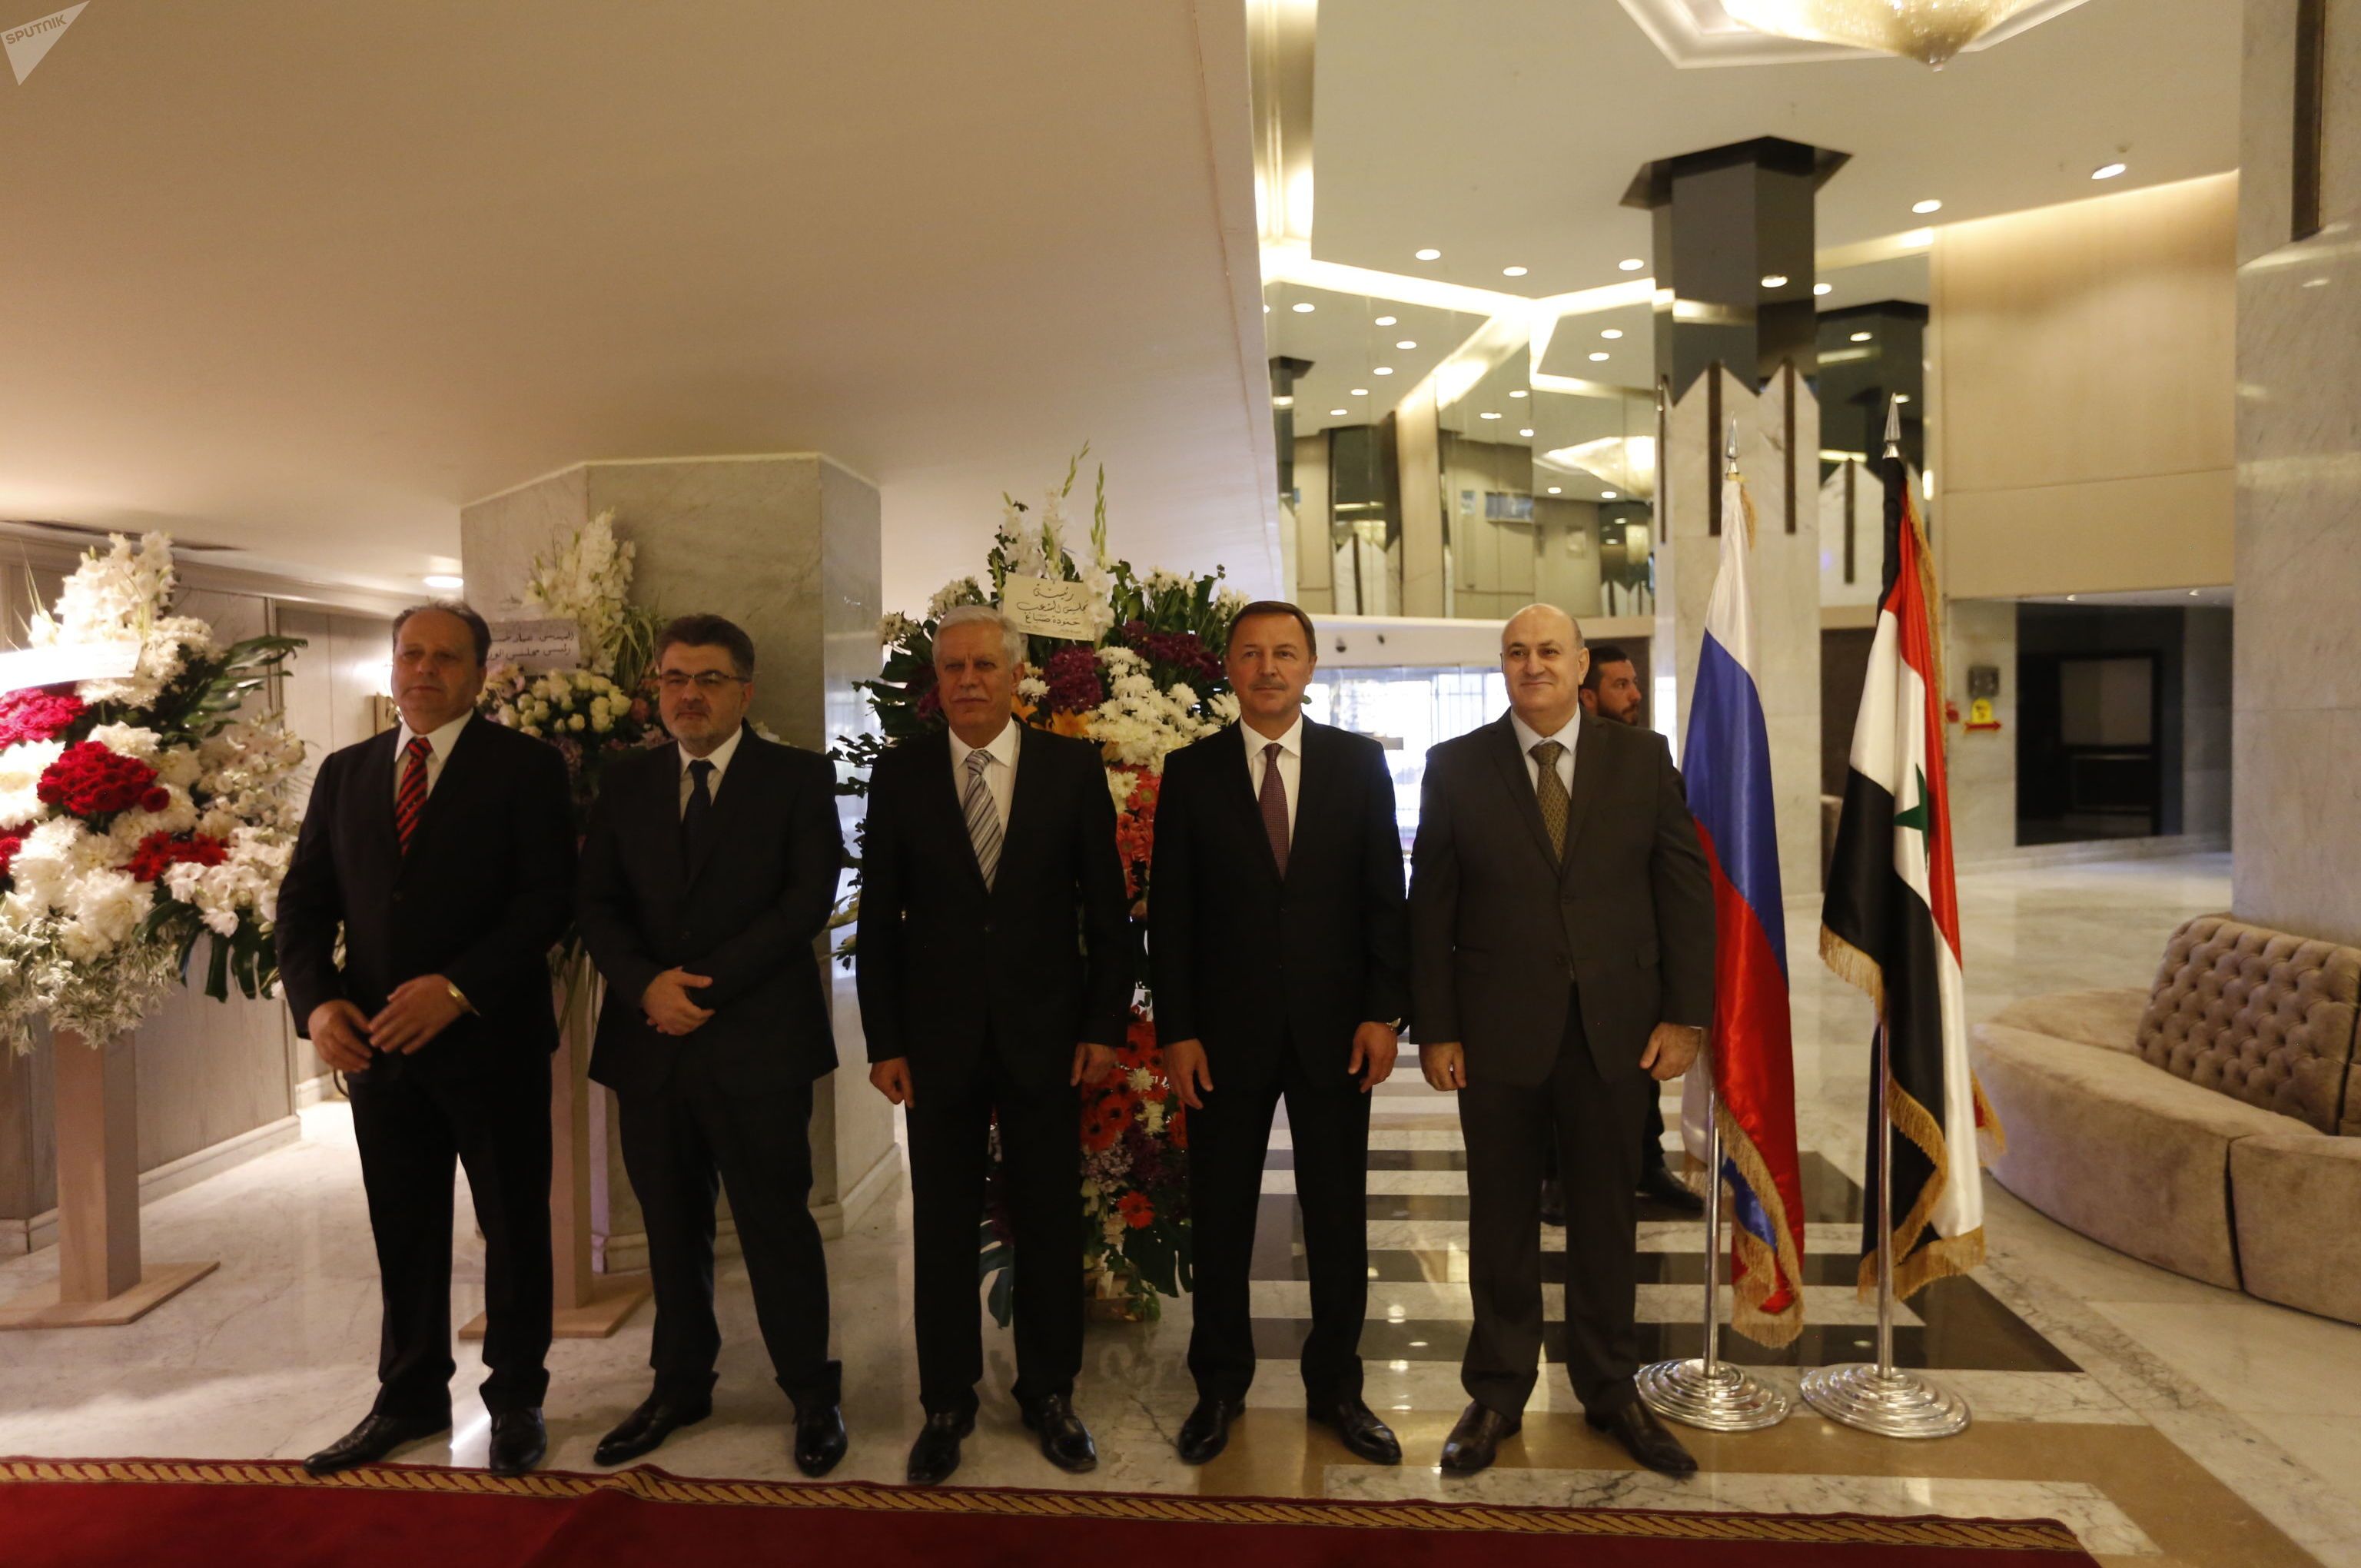 حفل الاستقبال الذي أقامته القيادة المركزية لحزب البعث في دمشق، بمناسبة الذكرى الـ75 على تأسيس العلاقات الدبلوماسية السورية الروسية